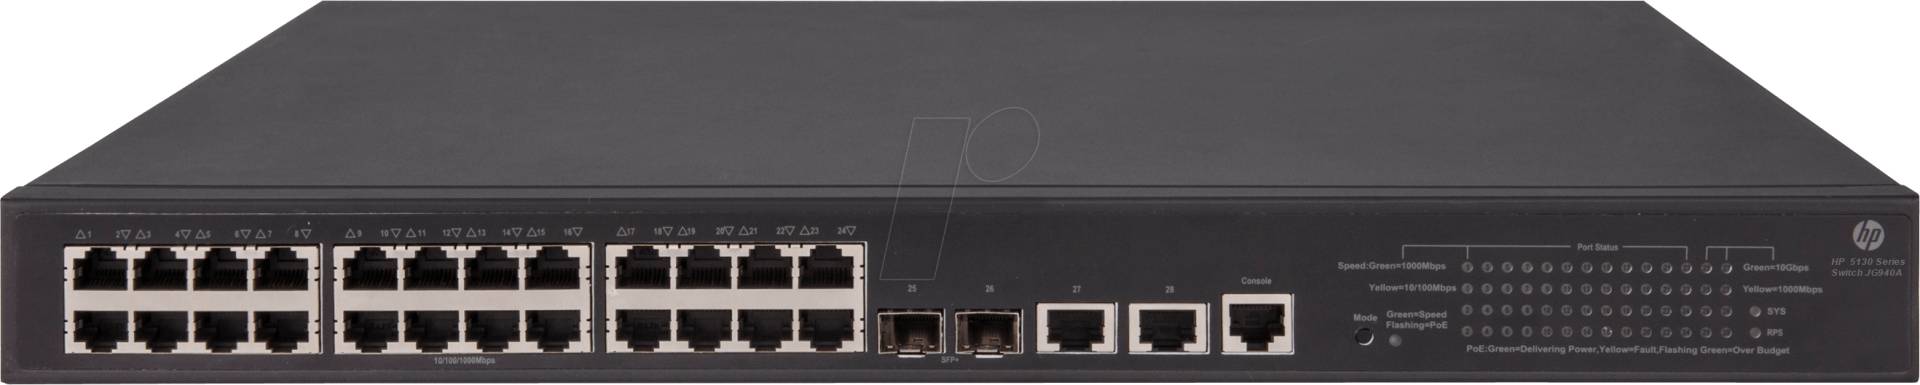 HP 5130-24G-SFPP - Switch, 24-Port, Gigabit Ethernet, PoE von HEWLETT PACKARD ENTERPRISE